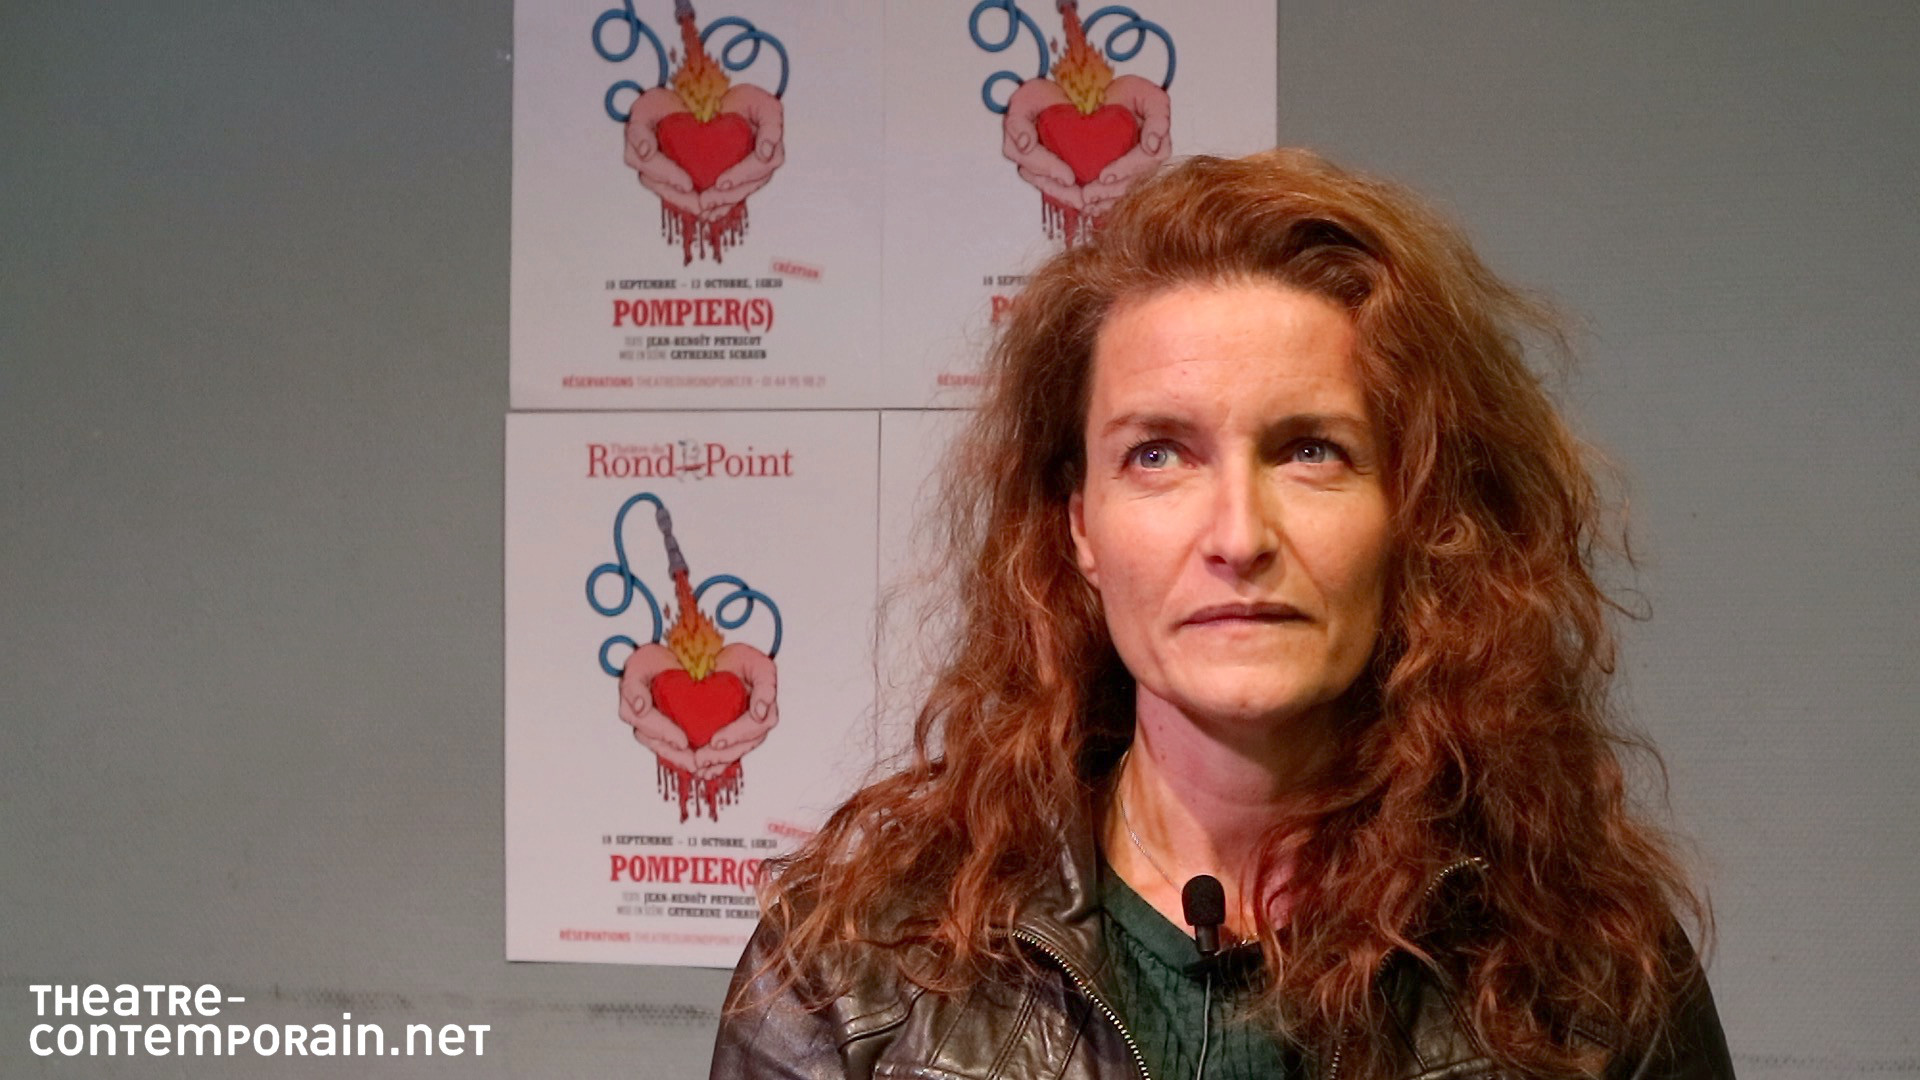 Vidéo "Pompier(s)" de Jean-Benoît Patricot, entretien avec Catherine Schaub (mise en scène)